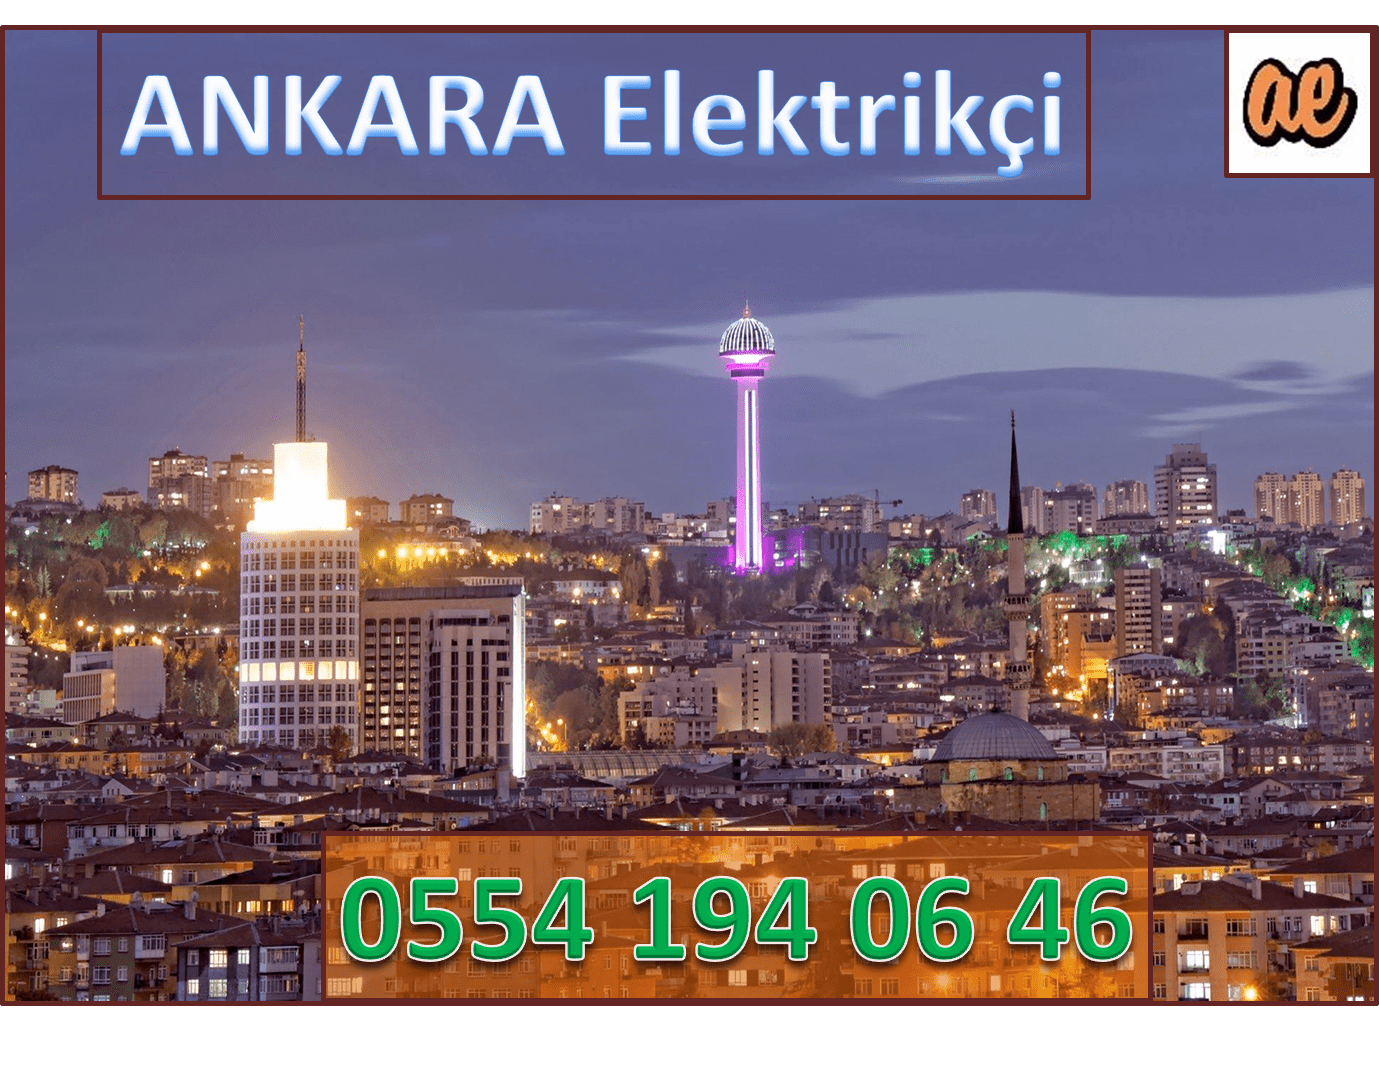 Elektrikçi, Ankara-Elektrikçi-Ankara-Elektrikçileri-Ankara-Elektrik-Ustası-Ankara-Elektrik-Tamircisi-Ankara-Acil-Elektrikçi-Ankara-En-Yakın-Elektrikçi.